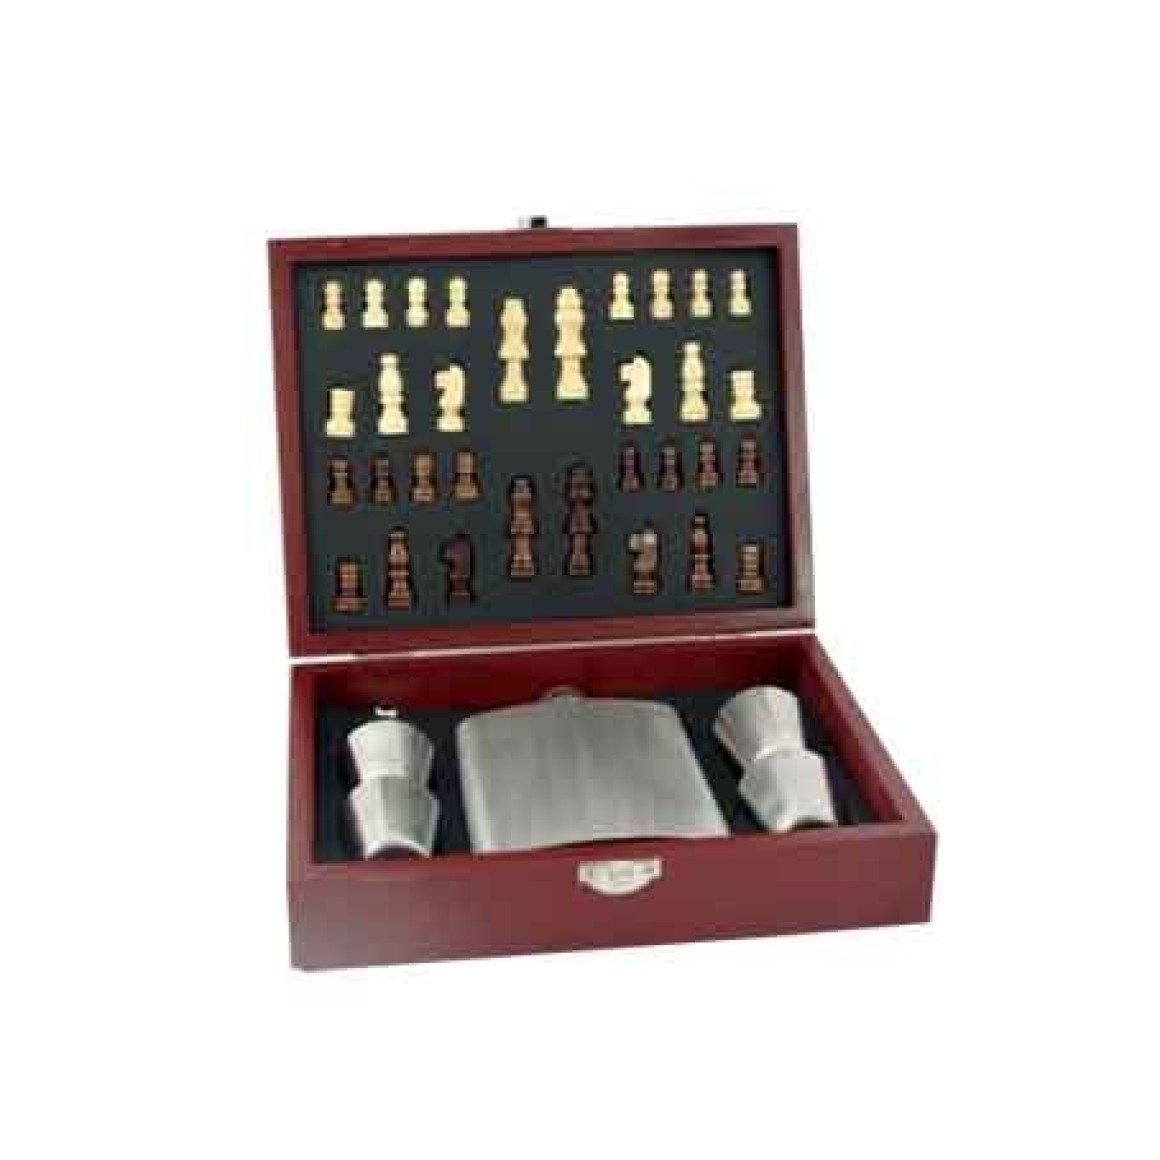 Kit cantil de bolso e jogo xadrez com 06 peças BR190102